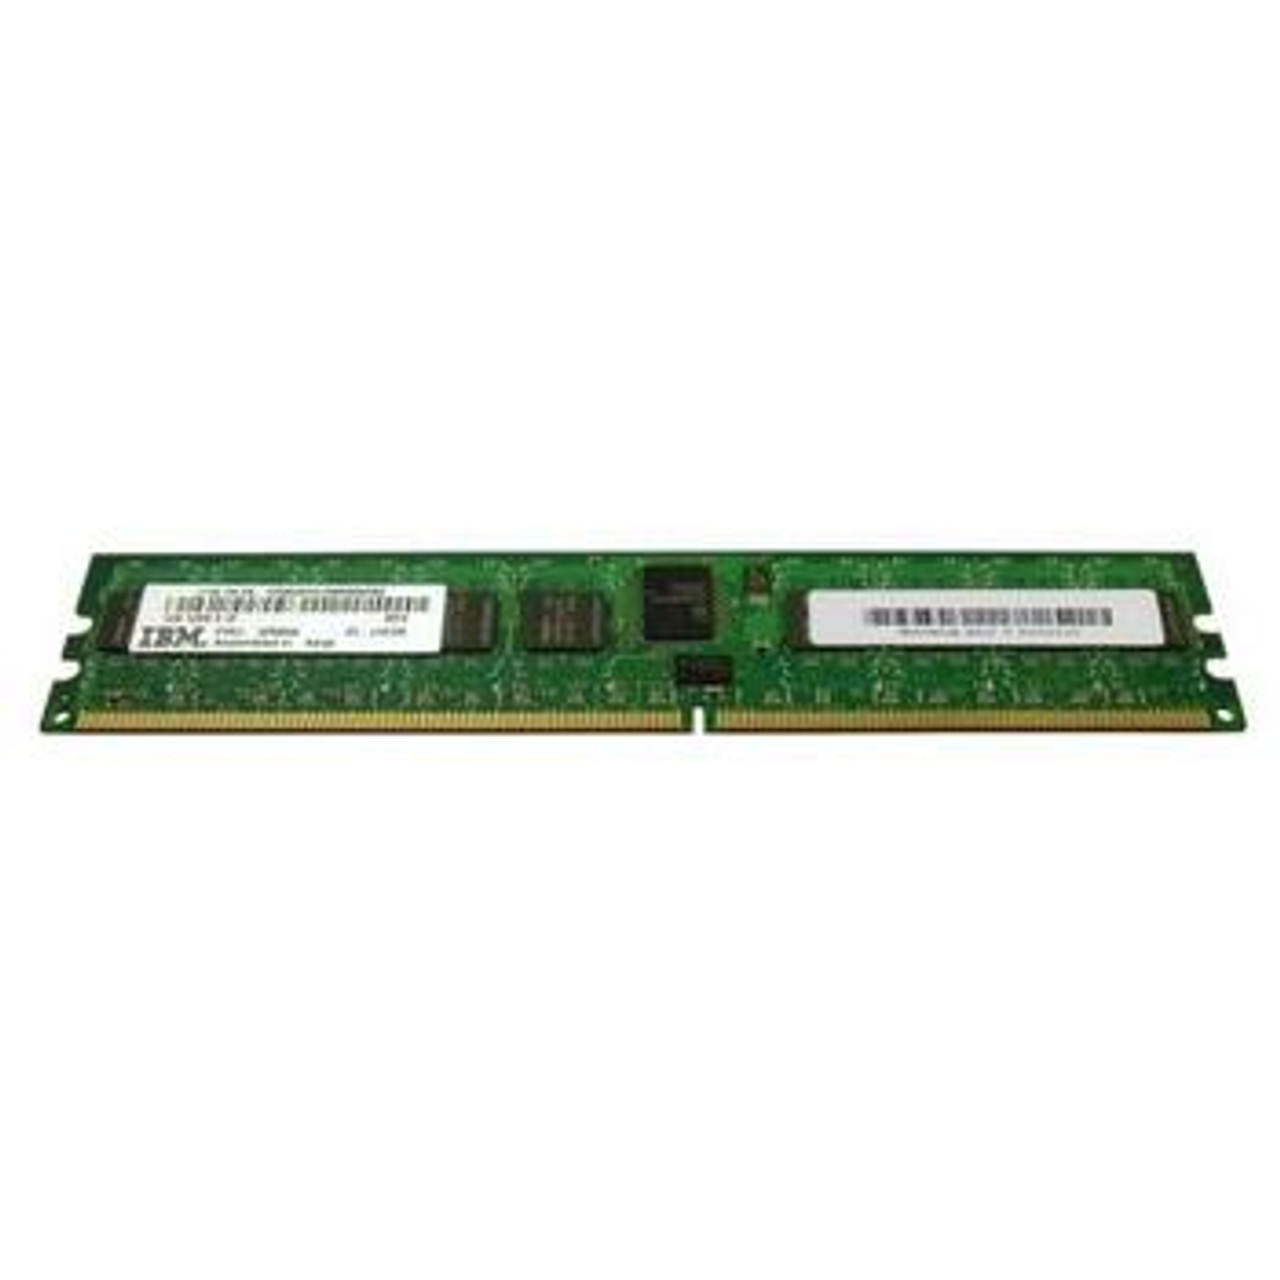 12R8544 IBM 1GB DDR2 Registered ECC PC2-4200 533Mhz Memory